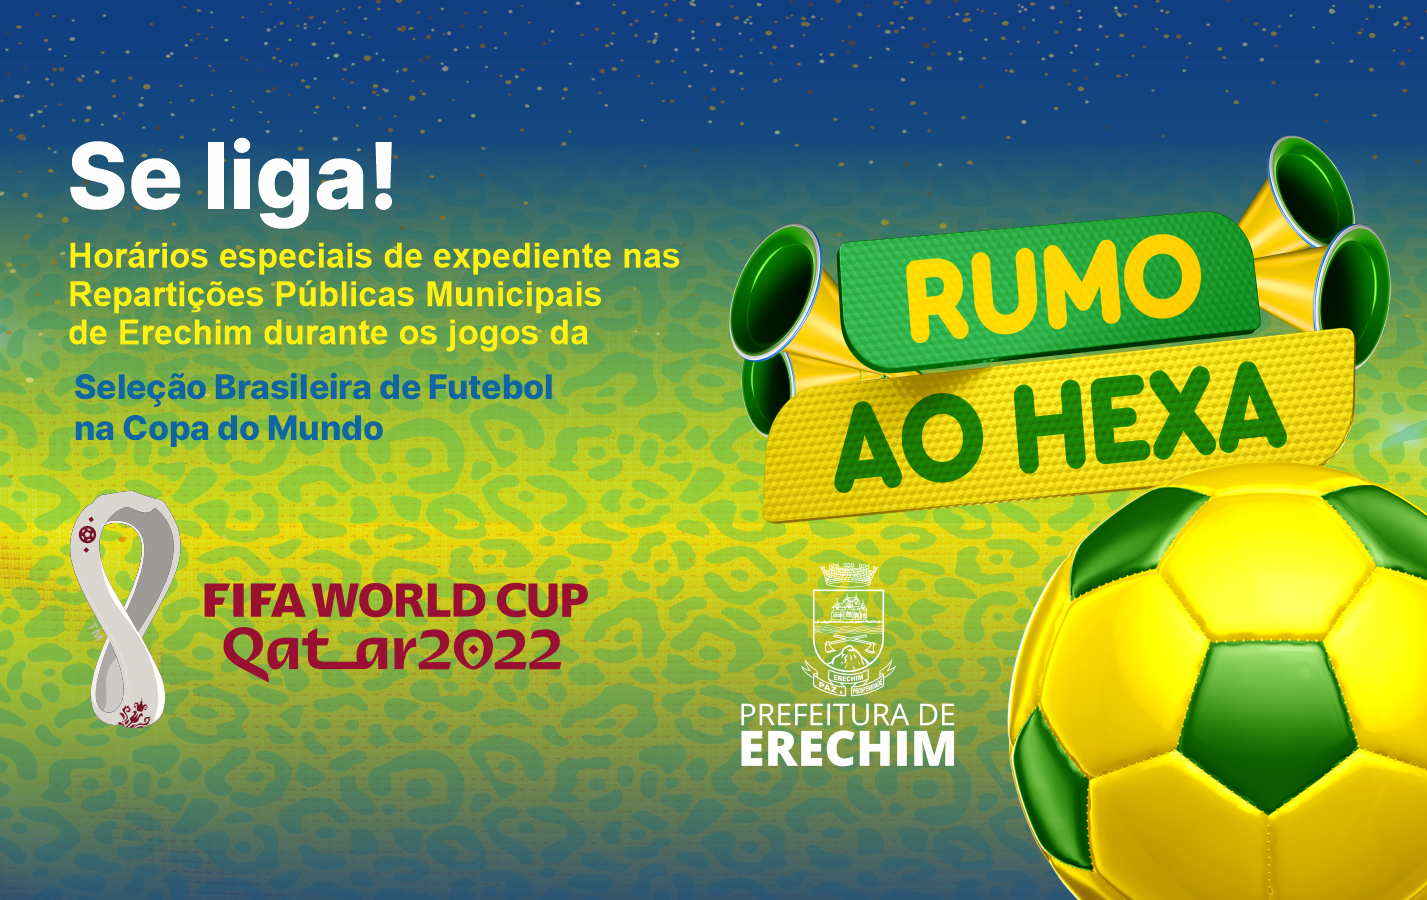 Administração altera horário de expediente em dias de jogos do Brasil na Copa  do Mundo - Capão Bonito do Sul